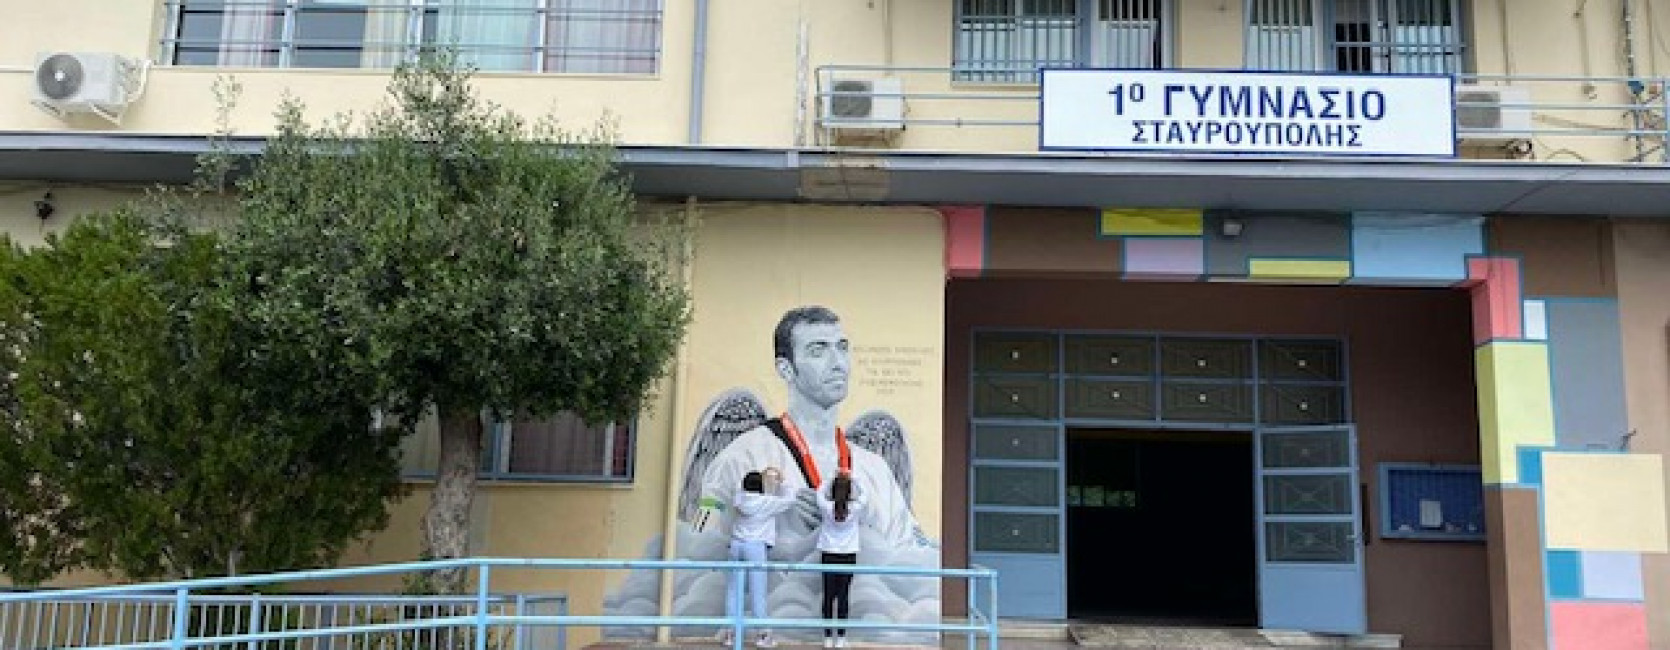 Γκράφιτι του Ολυμπιονίκη Αλέξανδρου Νικολαΐδη 